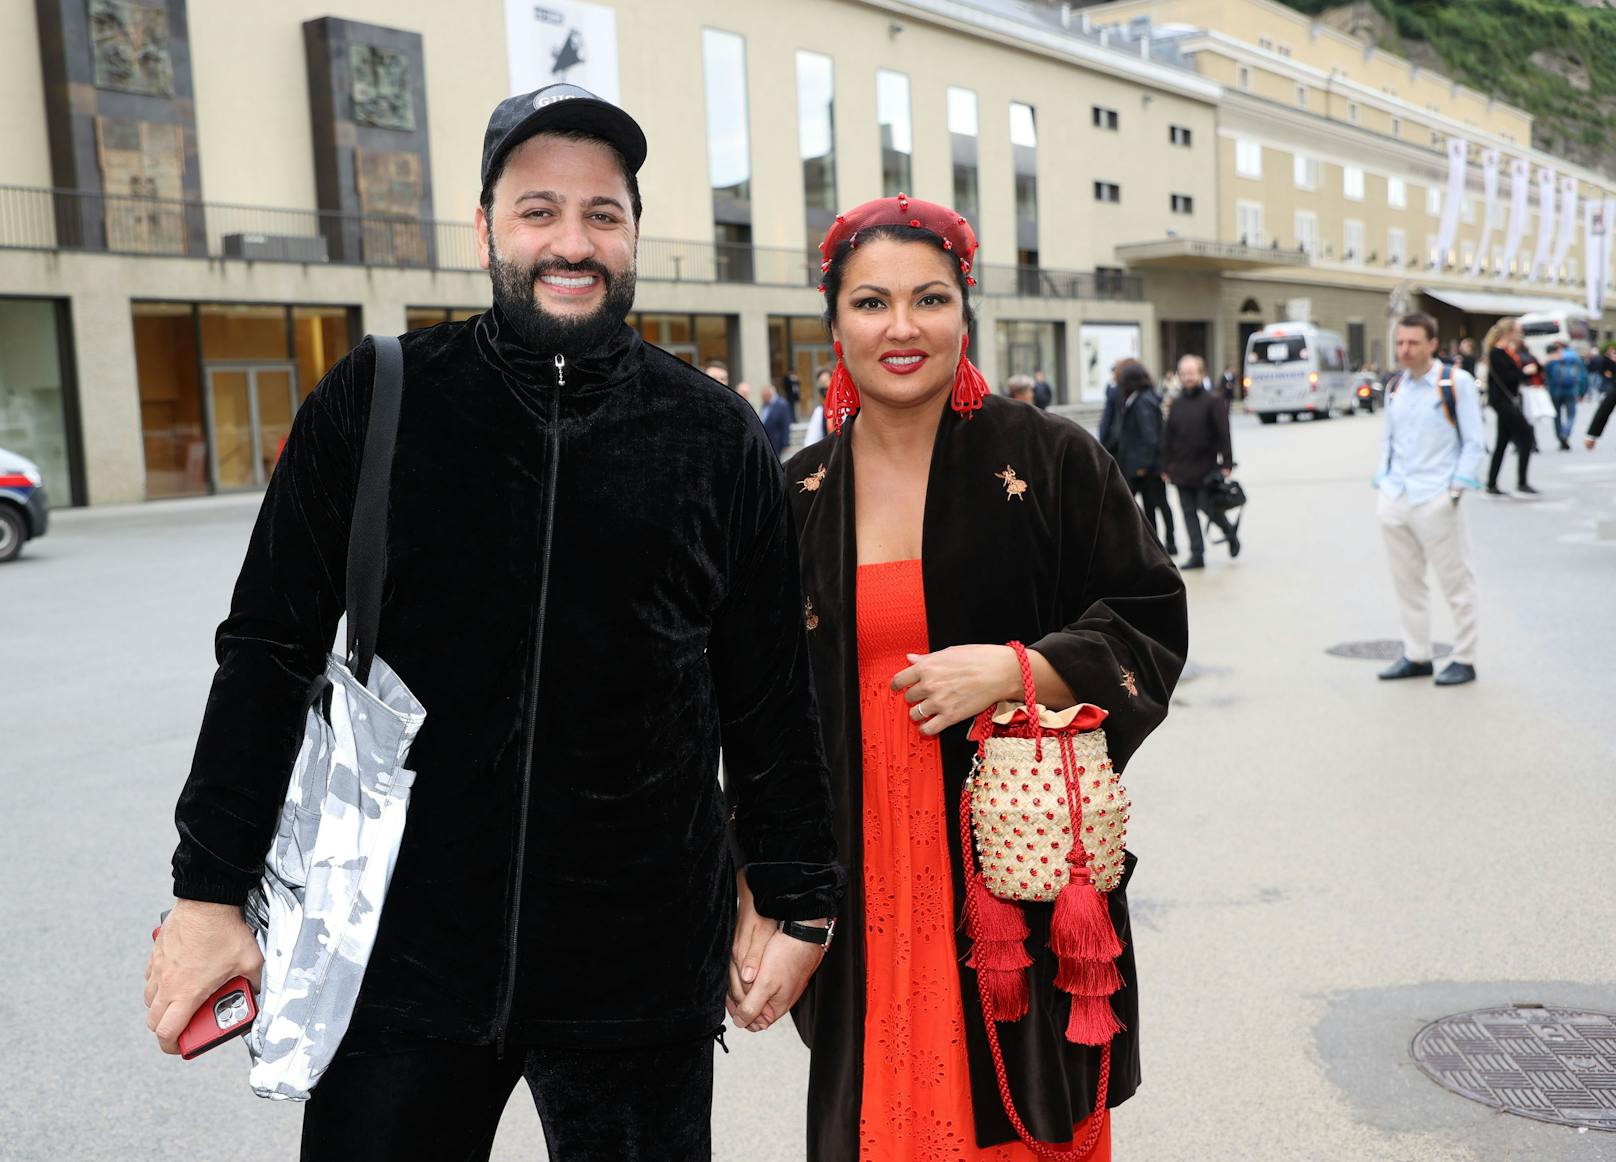 Anna Netrebko spaziert mit Ehemann Yusif Eyvazov nach der "Tosca"-Vorstellung am Freitag (27.8.) durch Salzburg. An den Tagen zuvor hatte sich das Paar zur Enttäuschung der Fans immer recht schnell zurückgezogen.